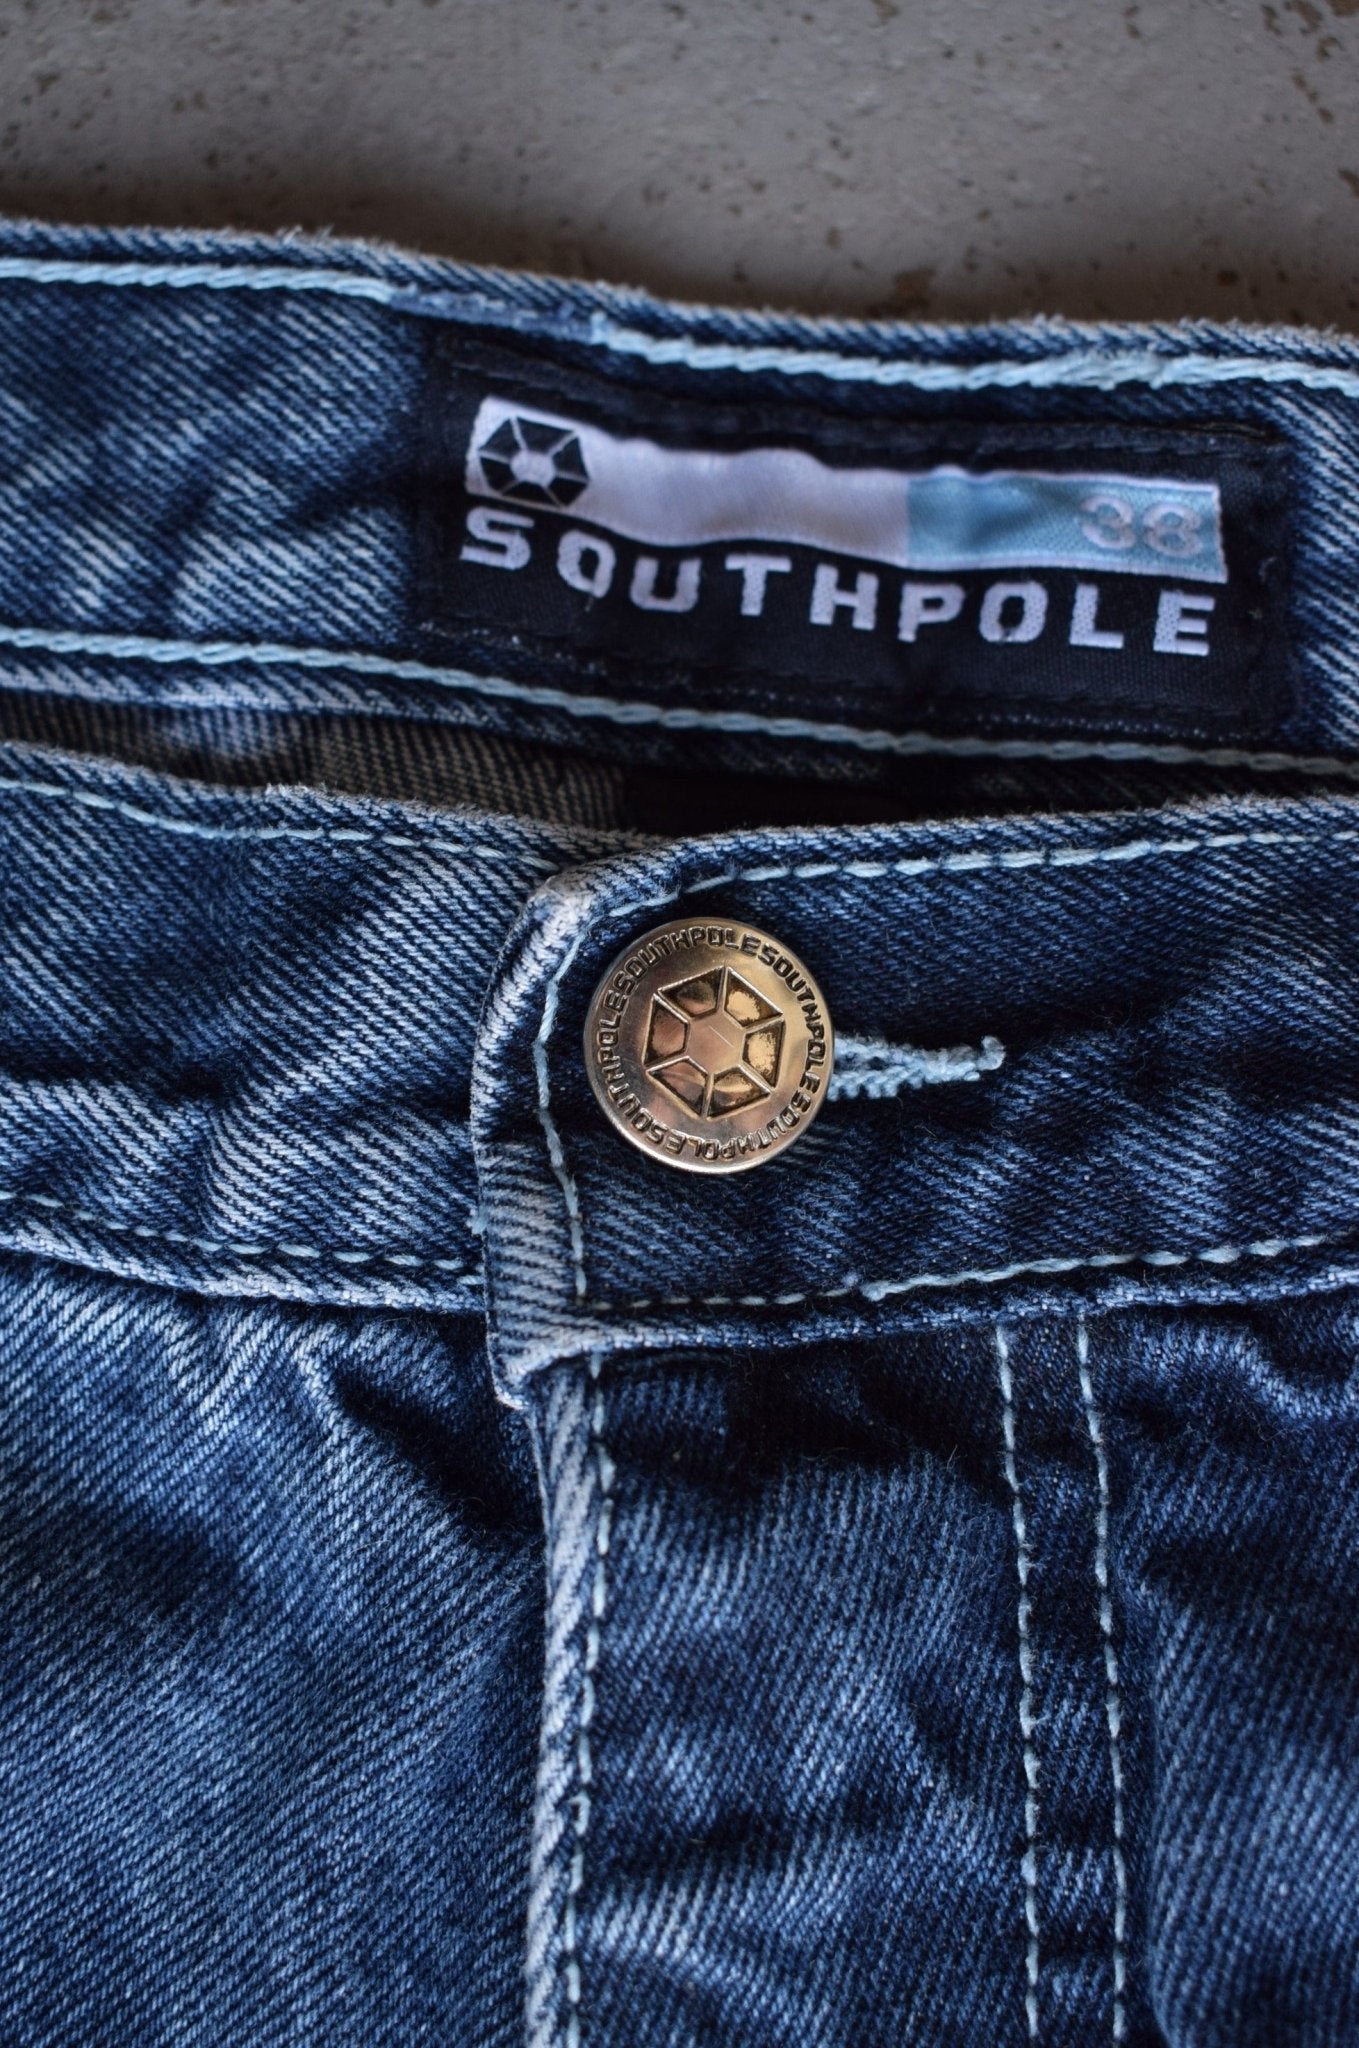 Vintage Southpole Jorts (38) - Retrospective Store